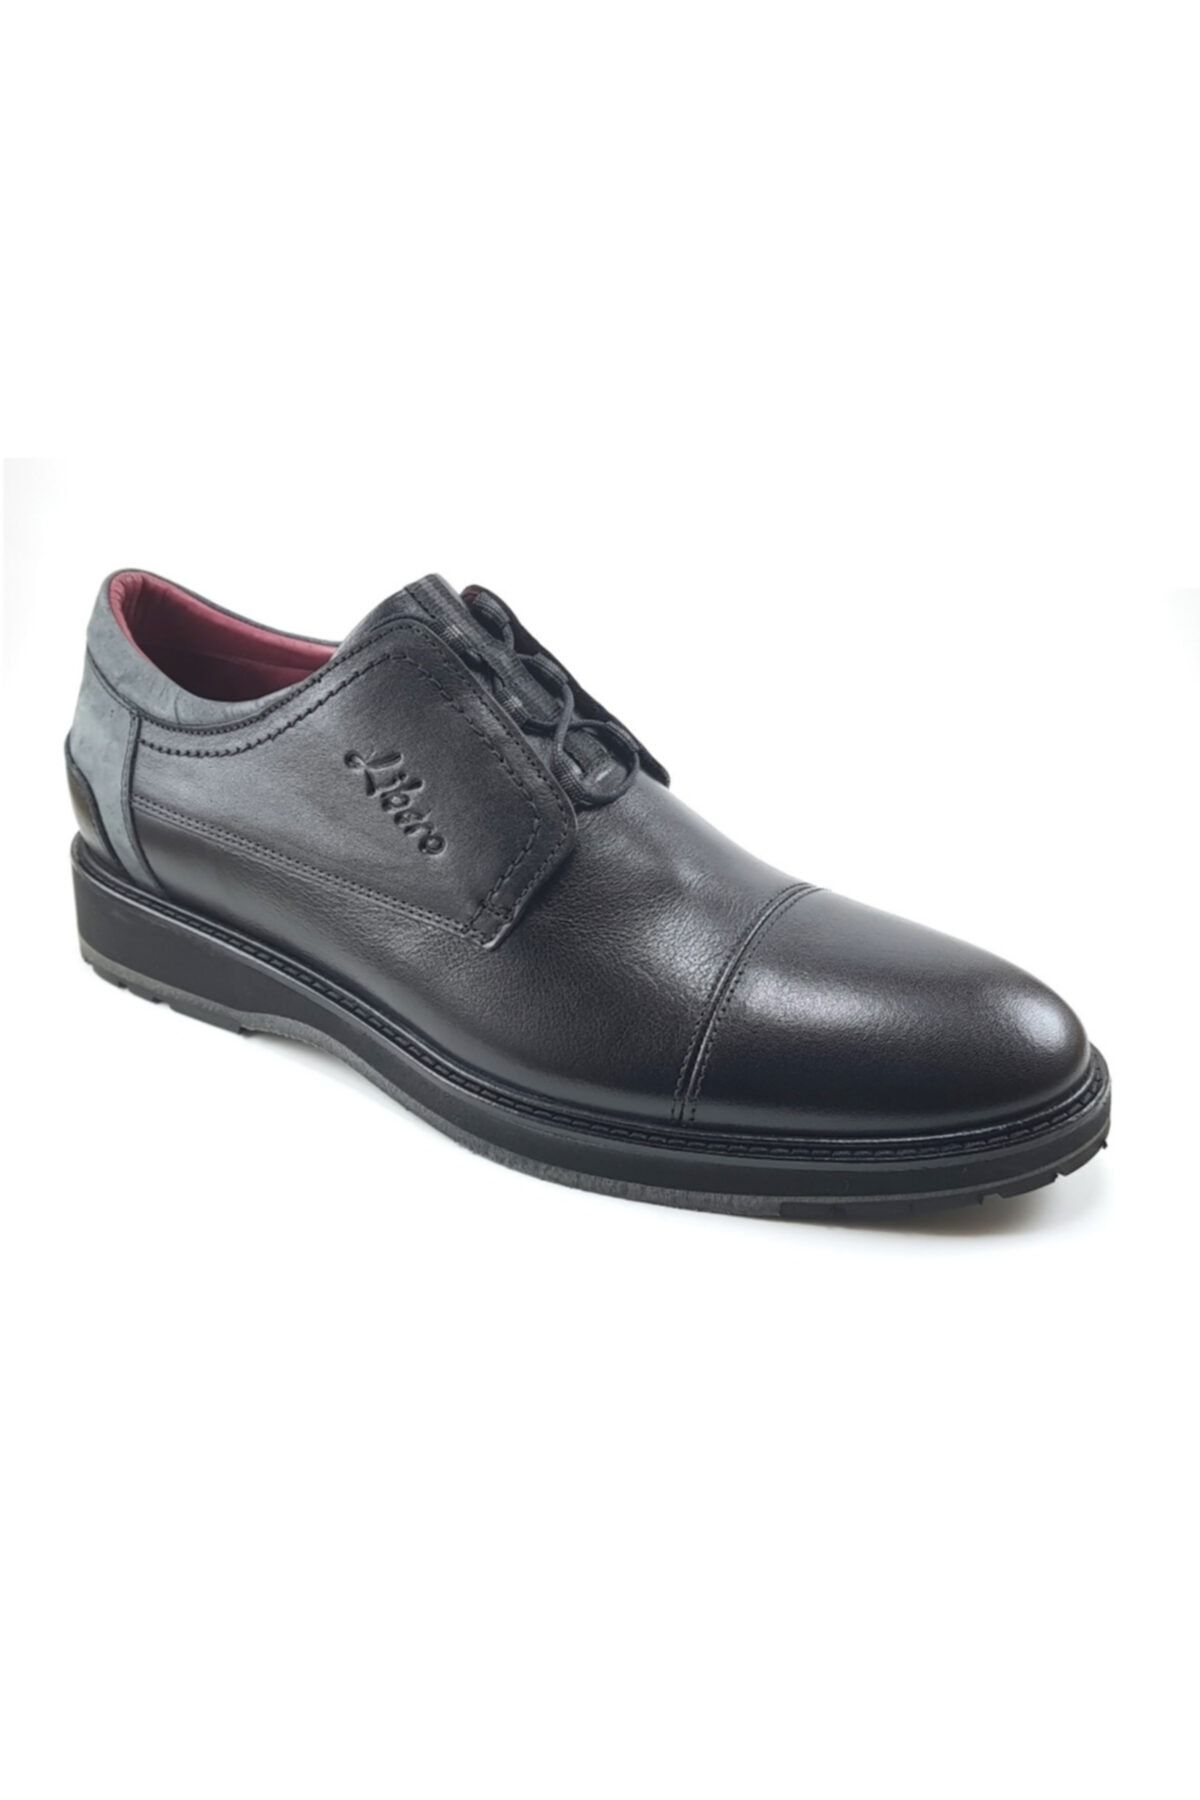 Libero 2646-1 Günlük Erkek Ayakkabı - Siyah